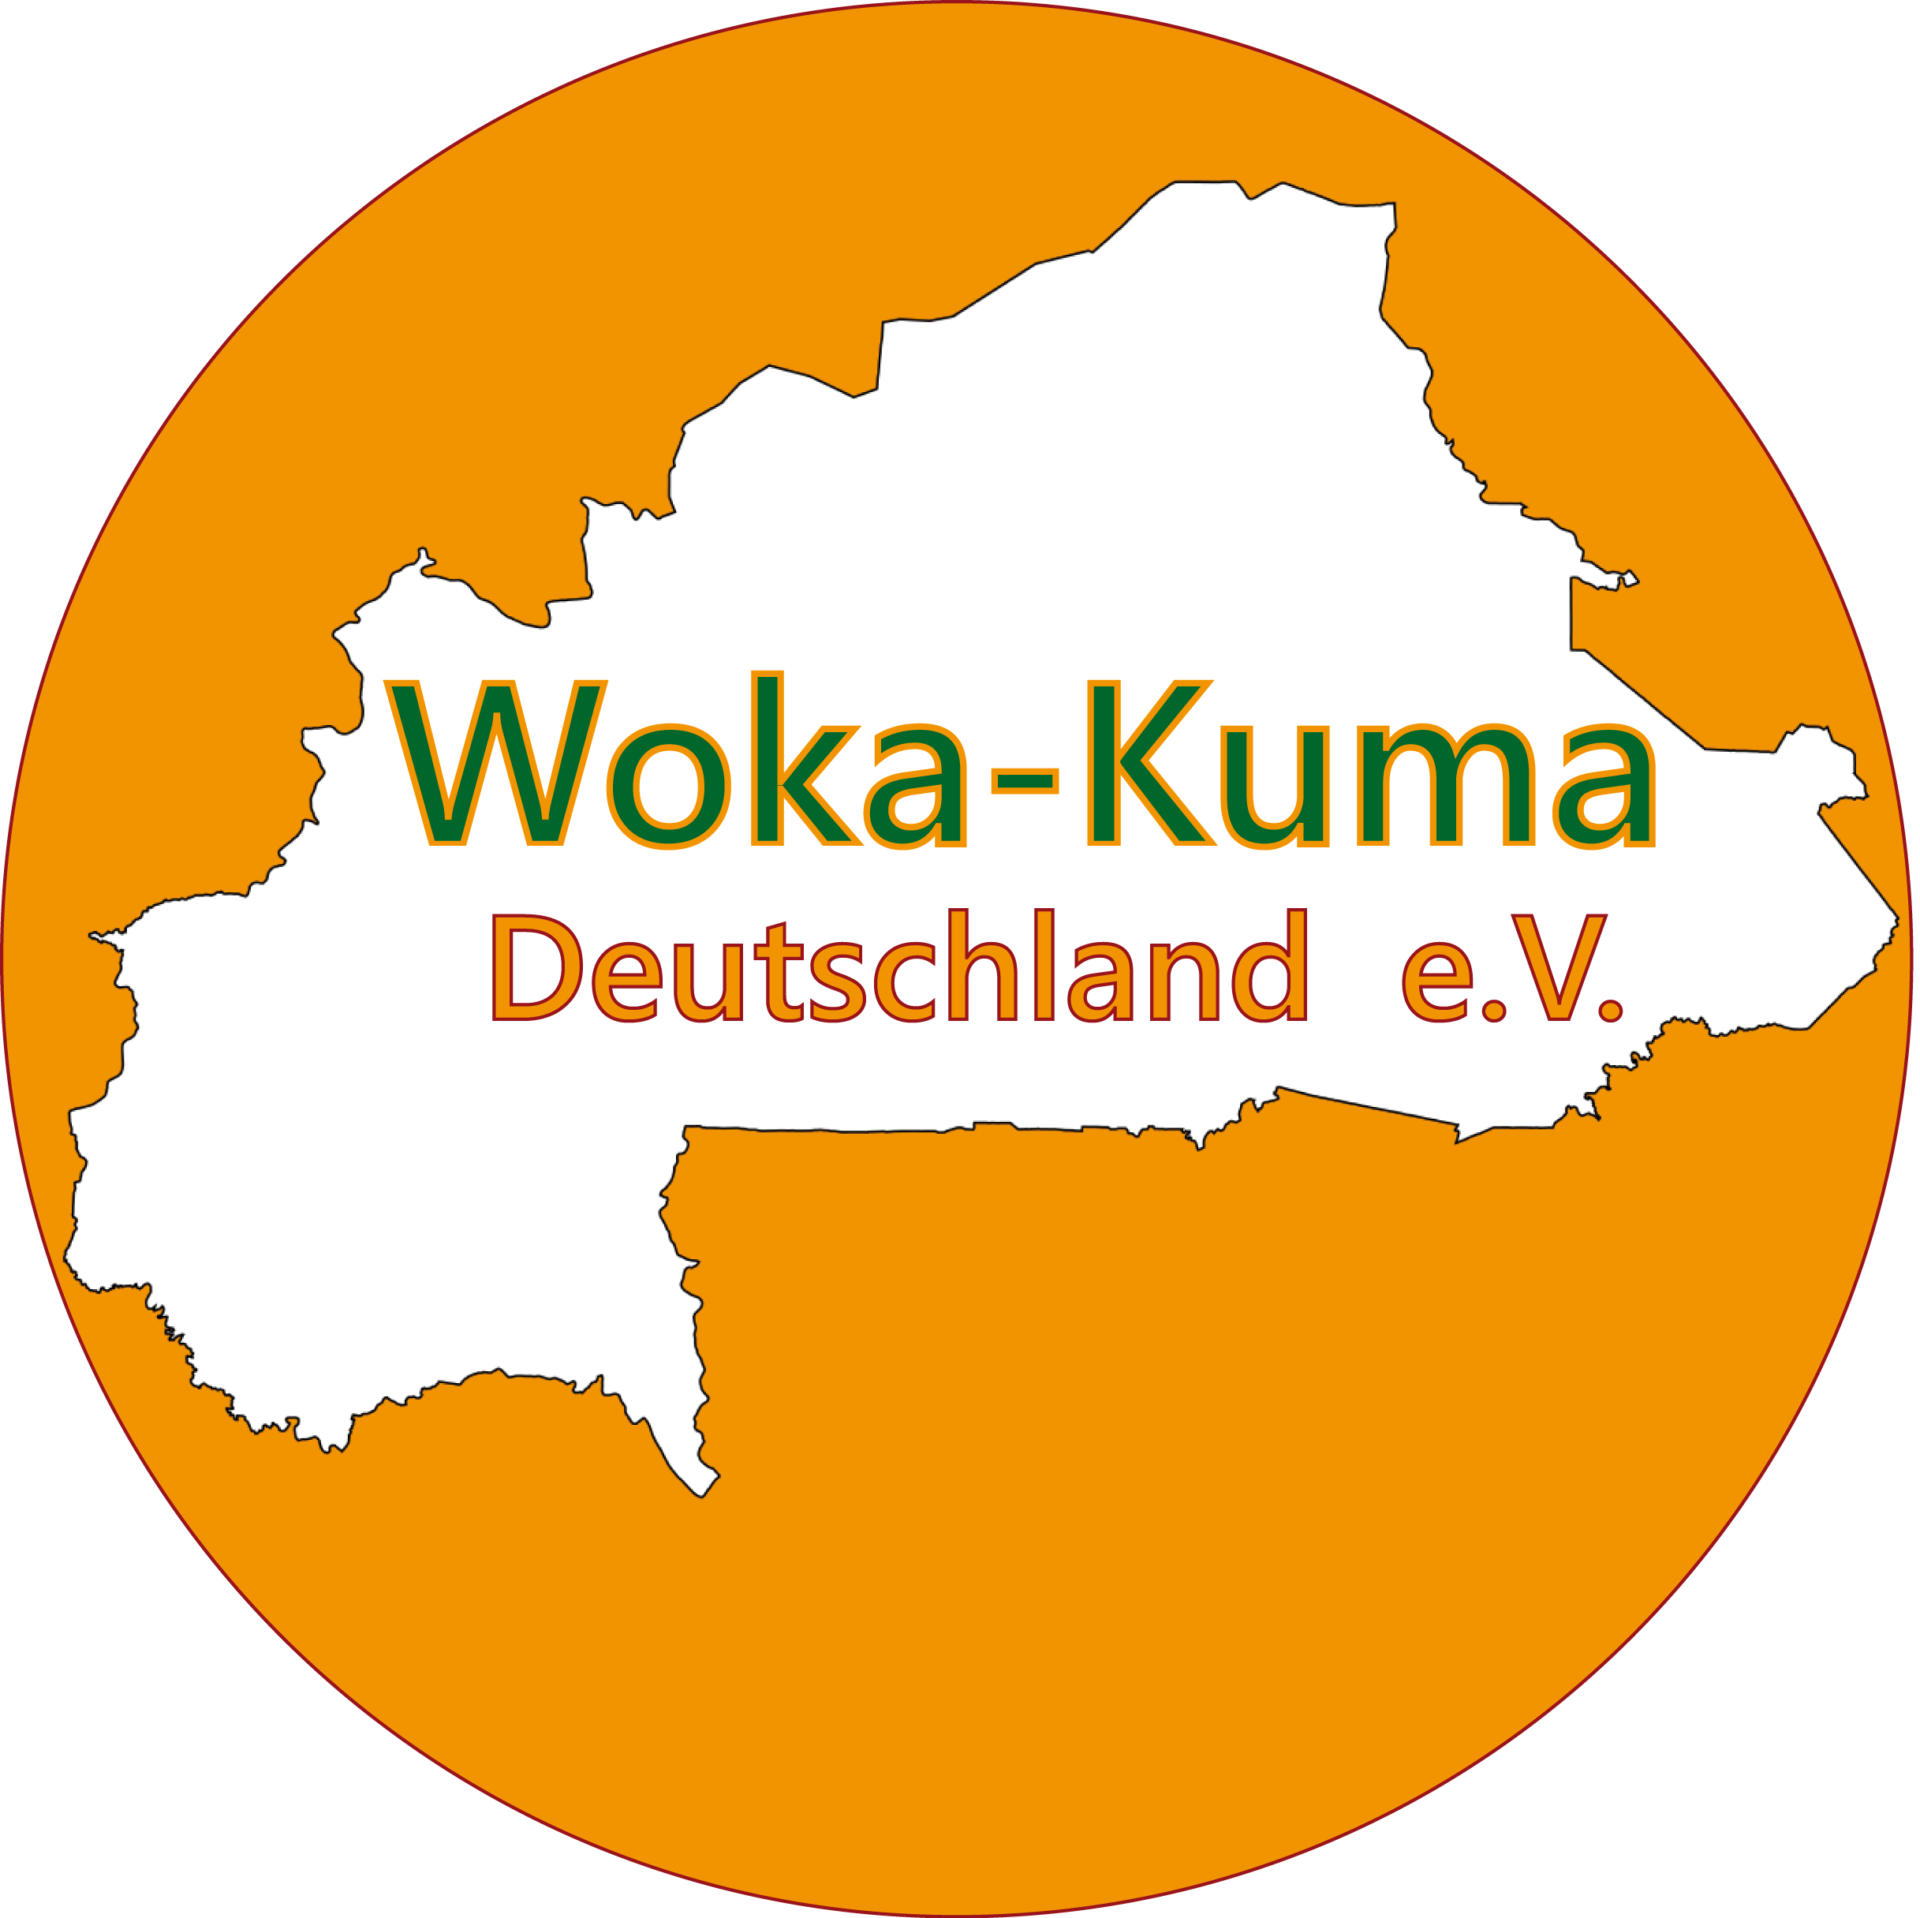 Woka-Kuma Deutschland e.V.